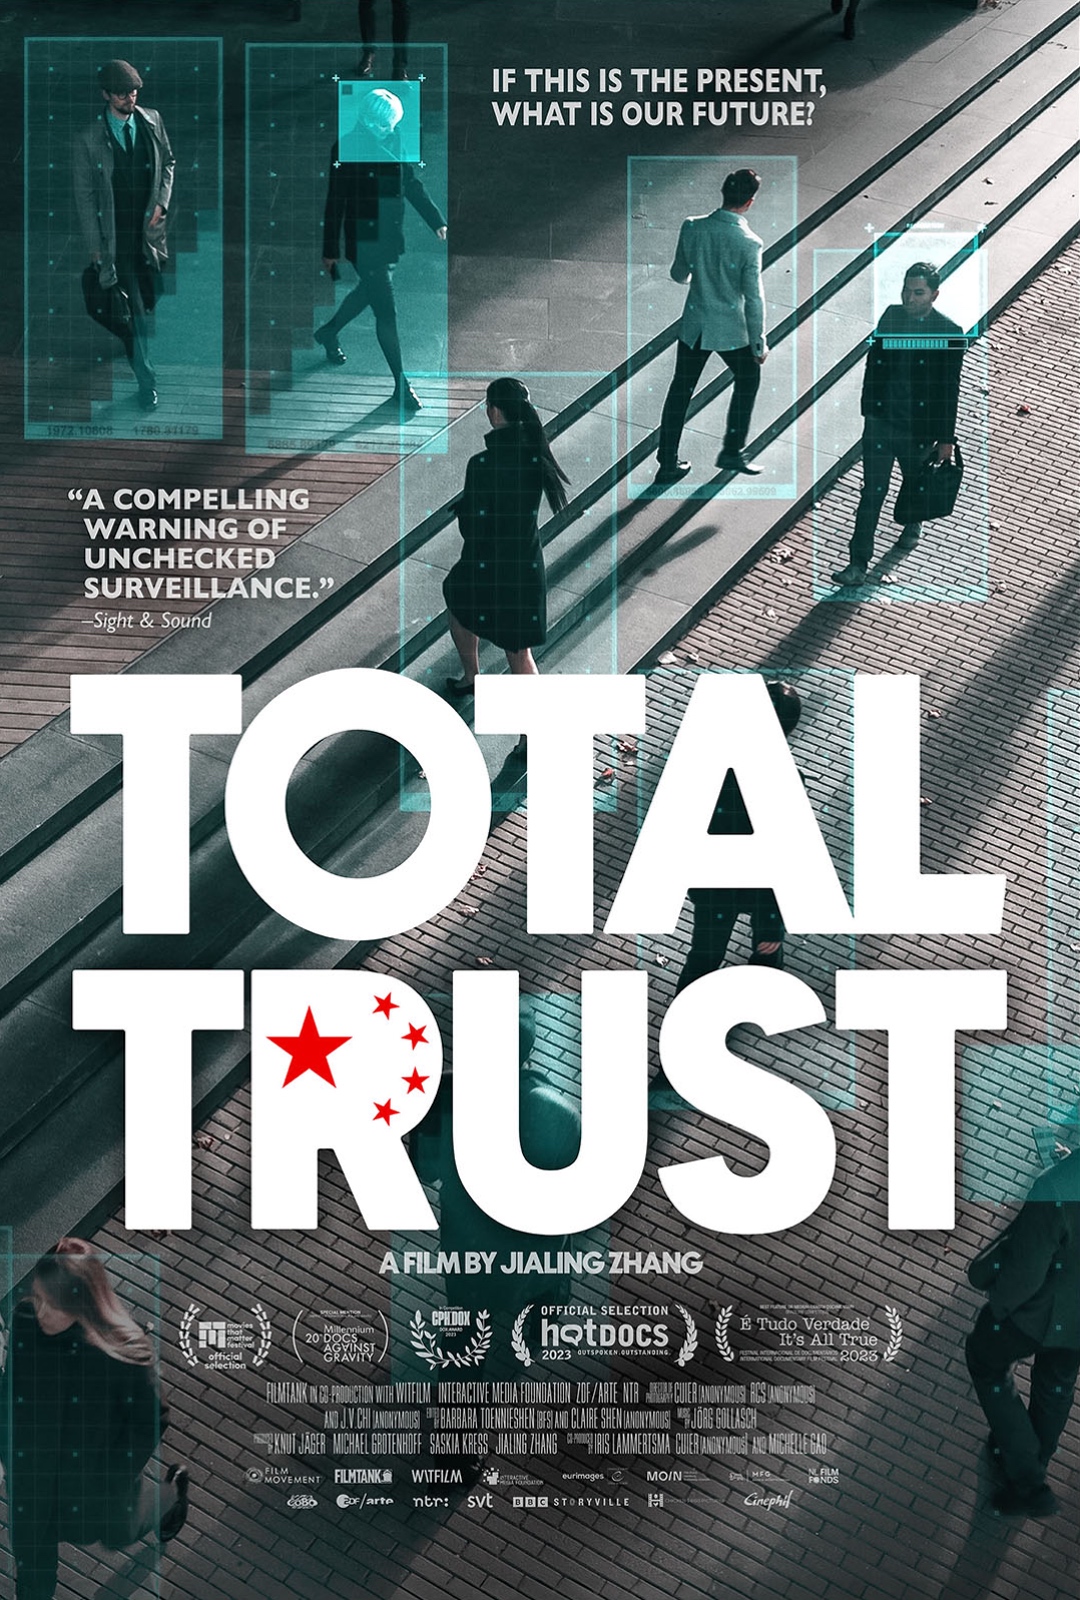 Total Trust